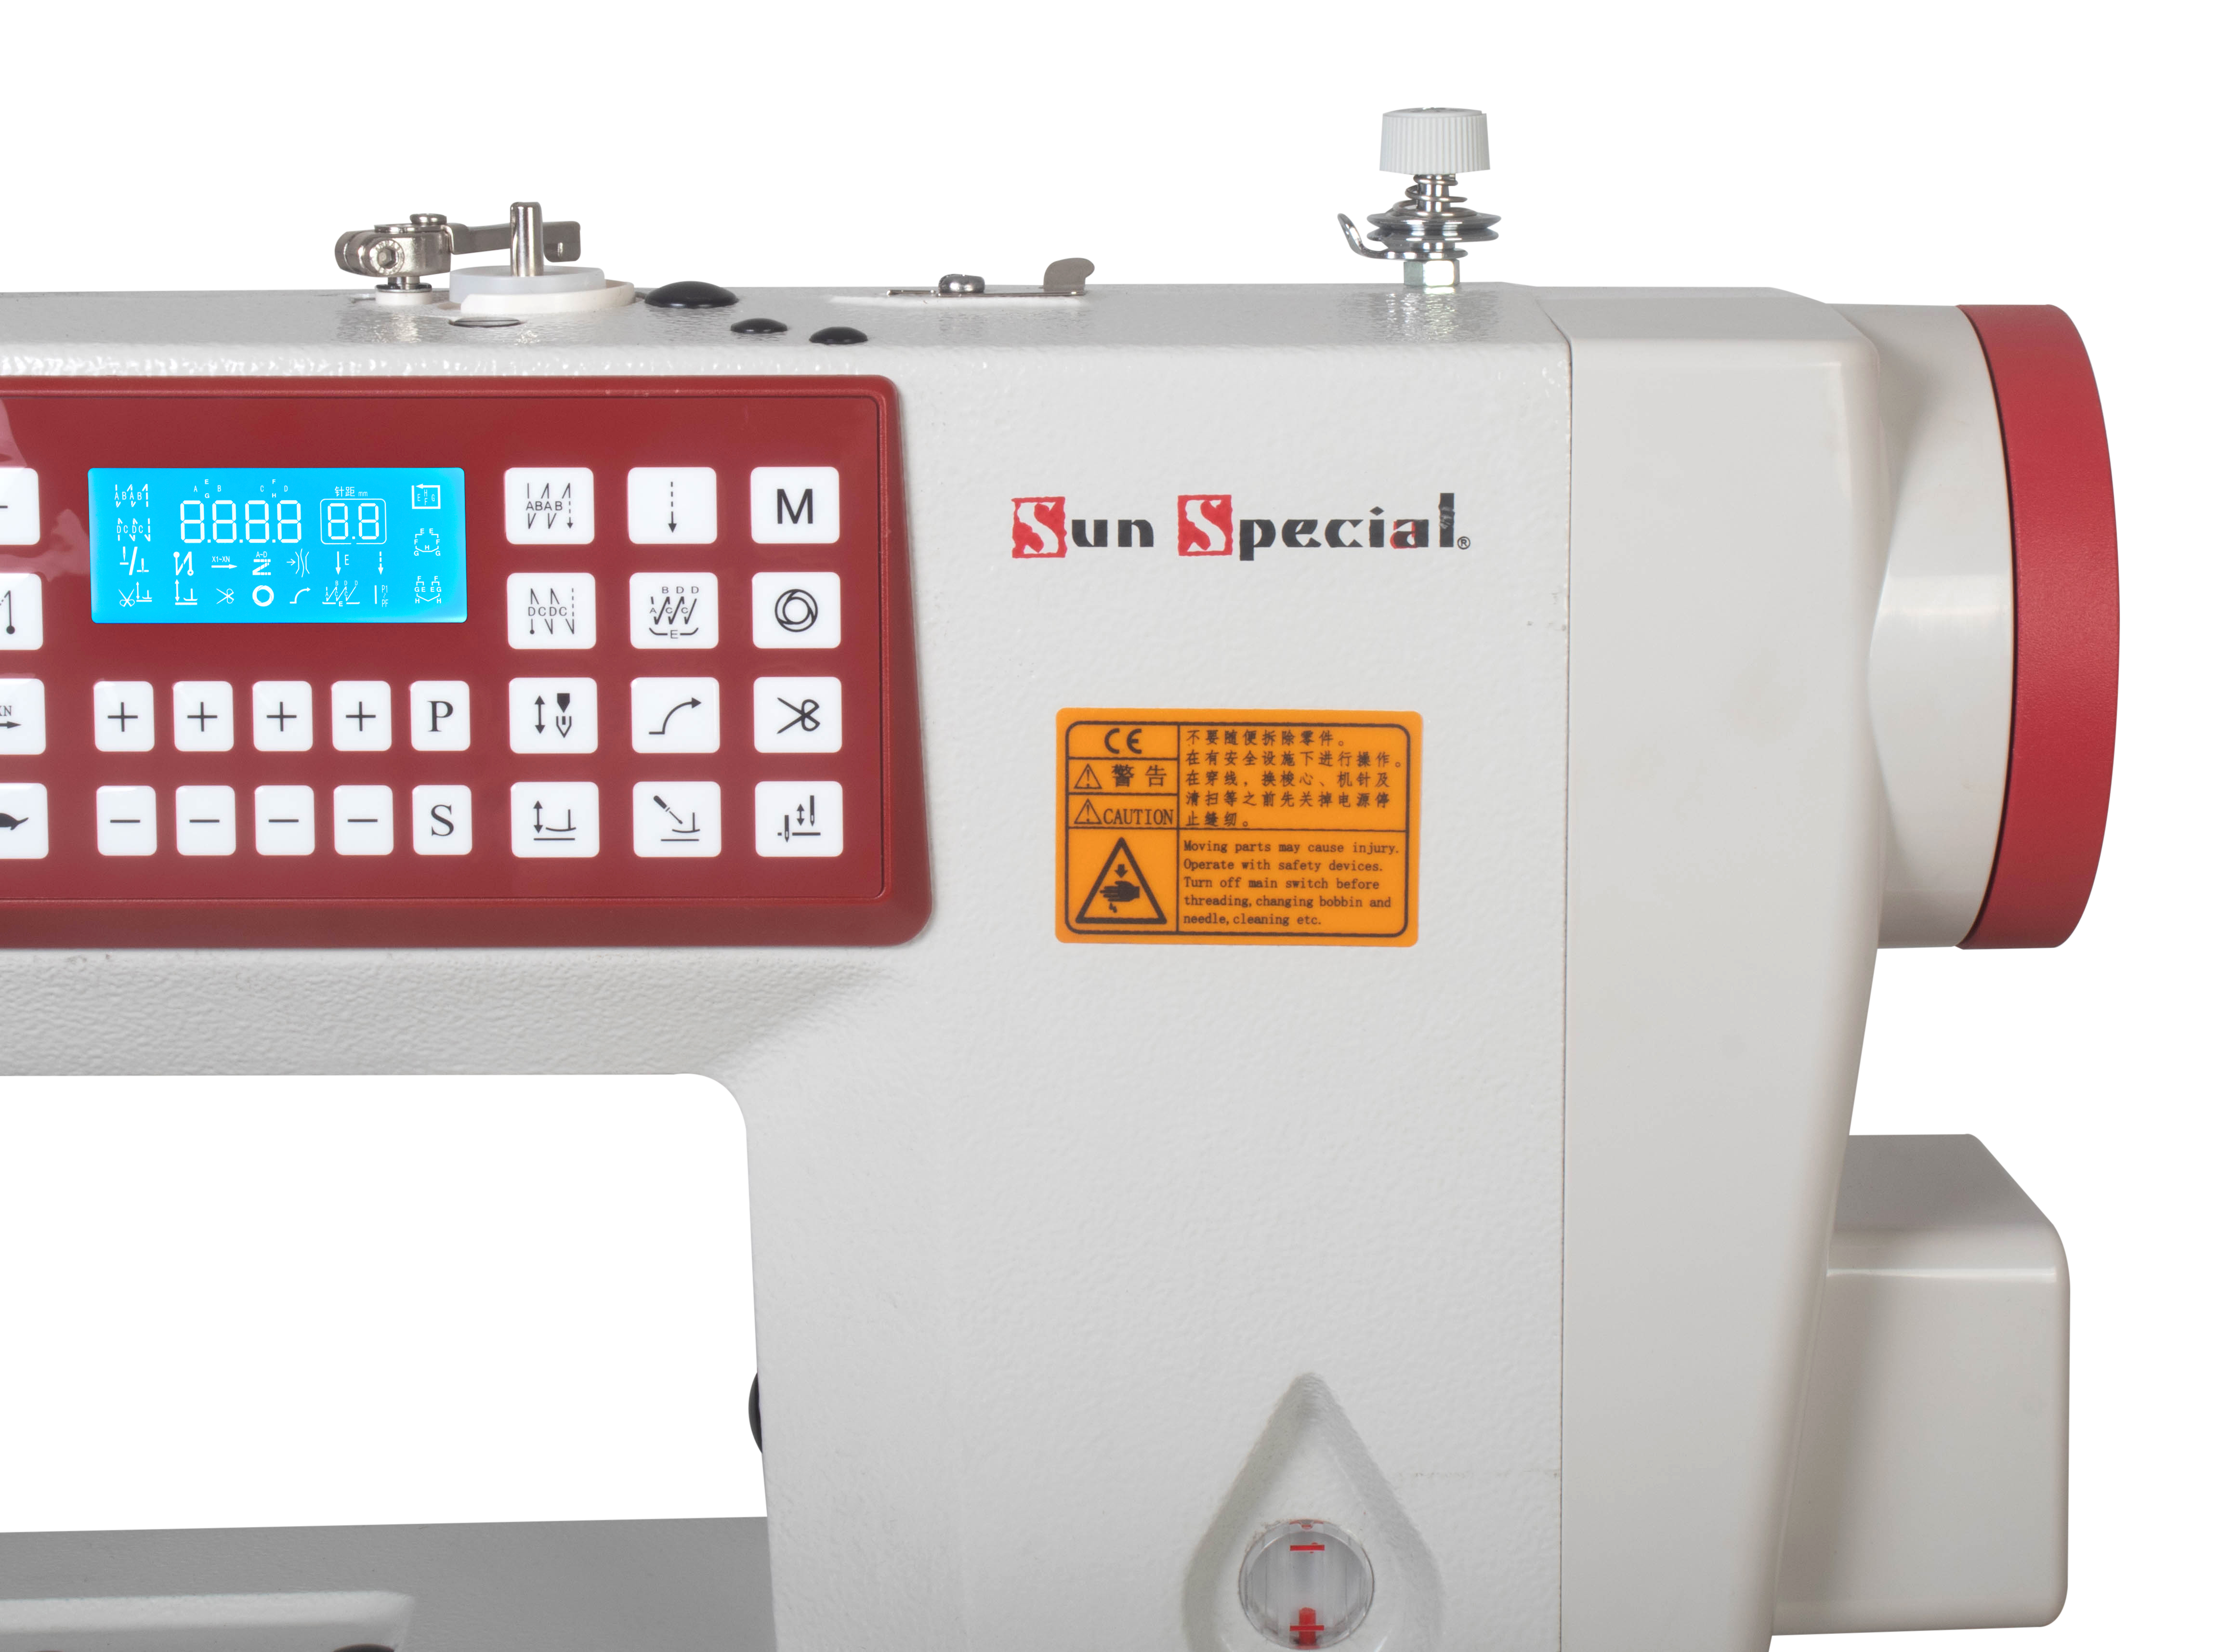 Máquina Costura Industrial Pespontadeira Eletrônica Barra Fixa SS272II-DM-QI - Sun Special